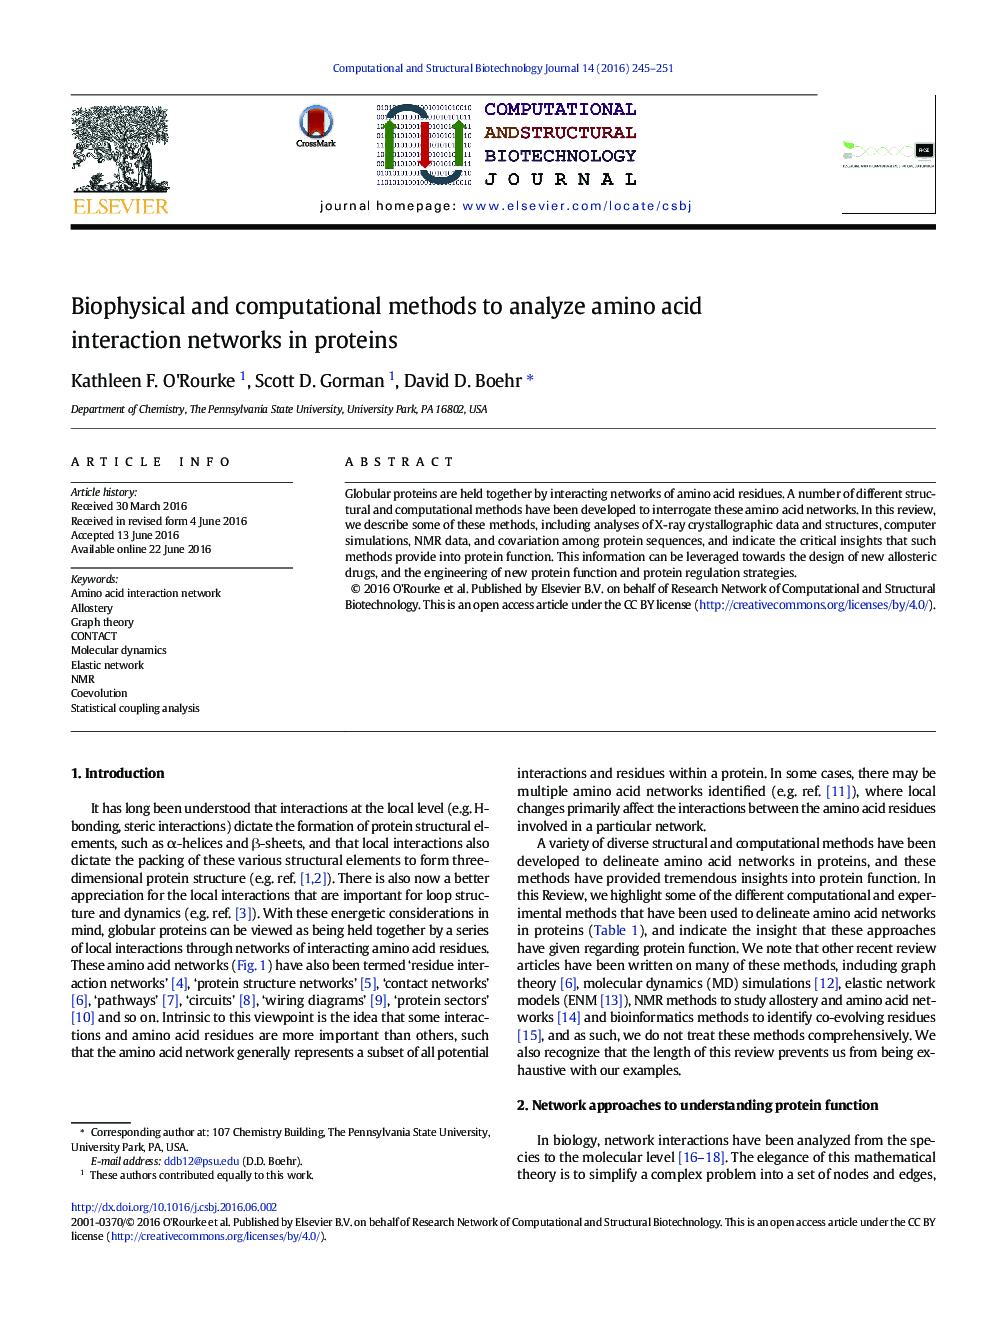 روش های بیوفیزیکی و محاسباتی برای تجزیه و تحلیل شبکه های متقابل آمینو اسید در پروتئین ها 